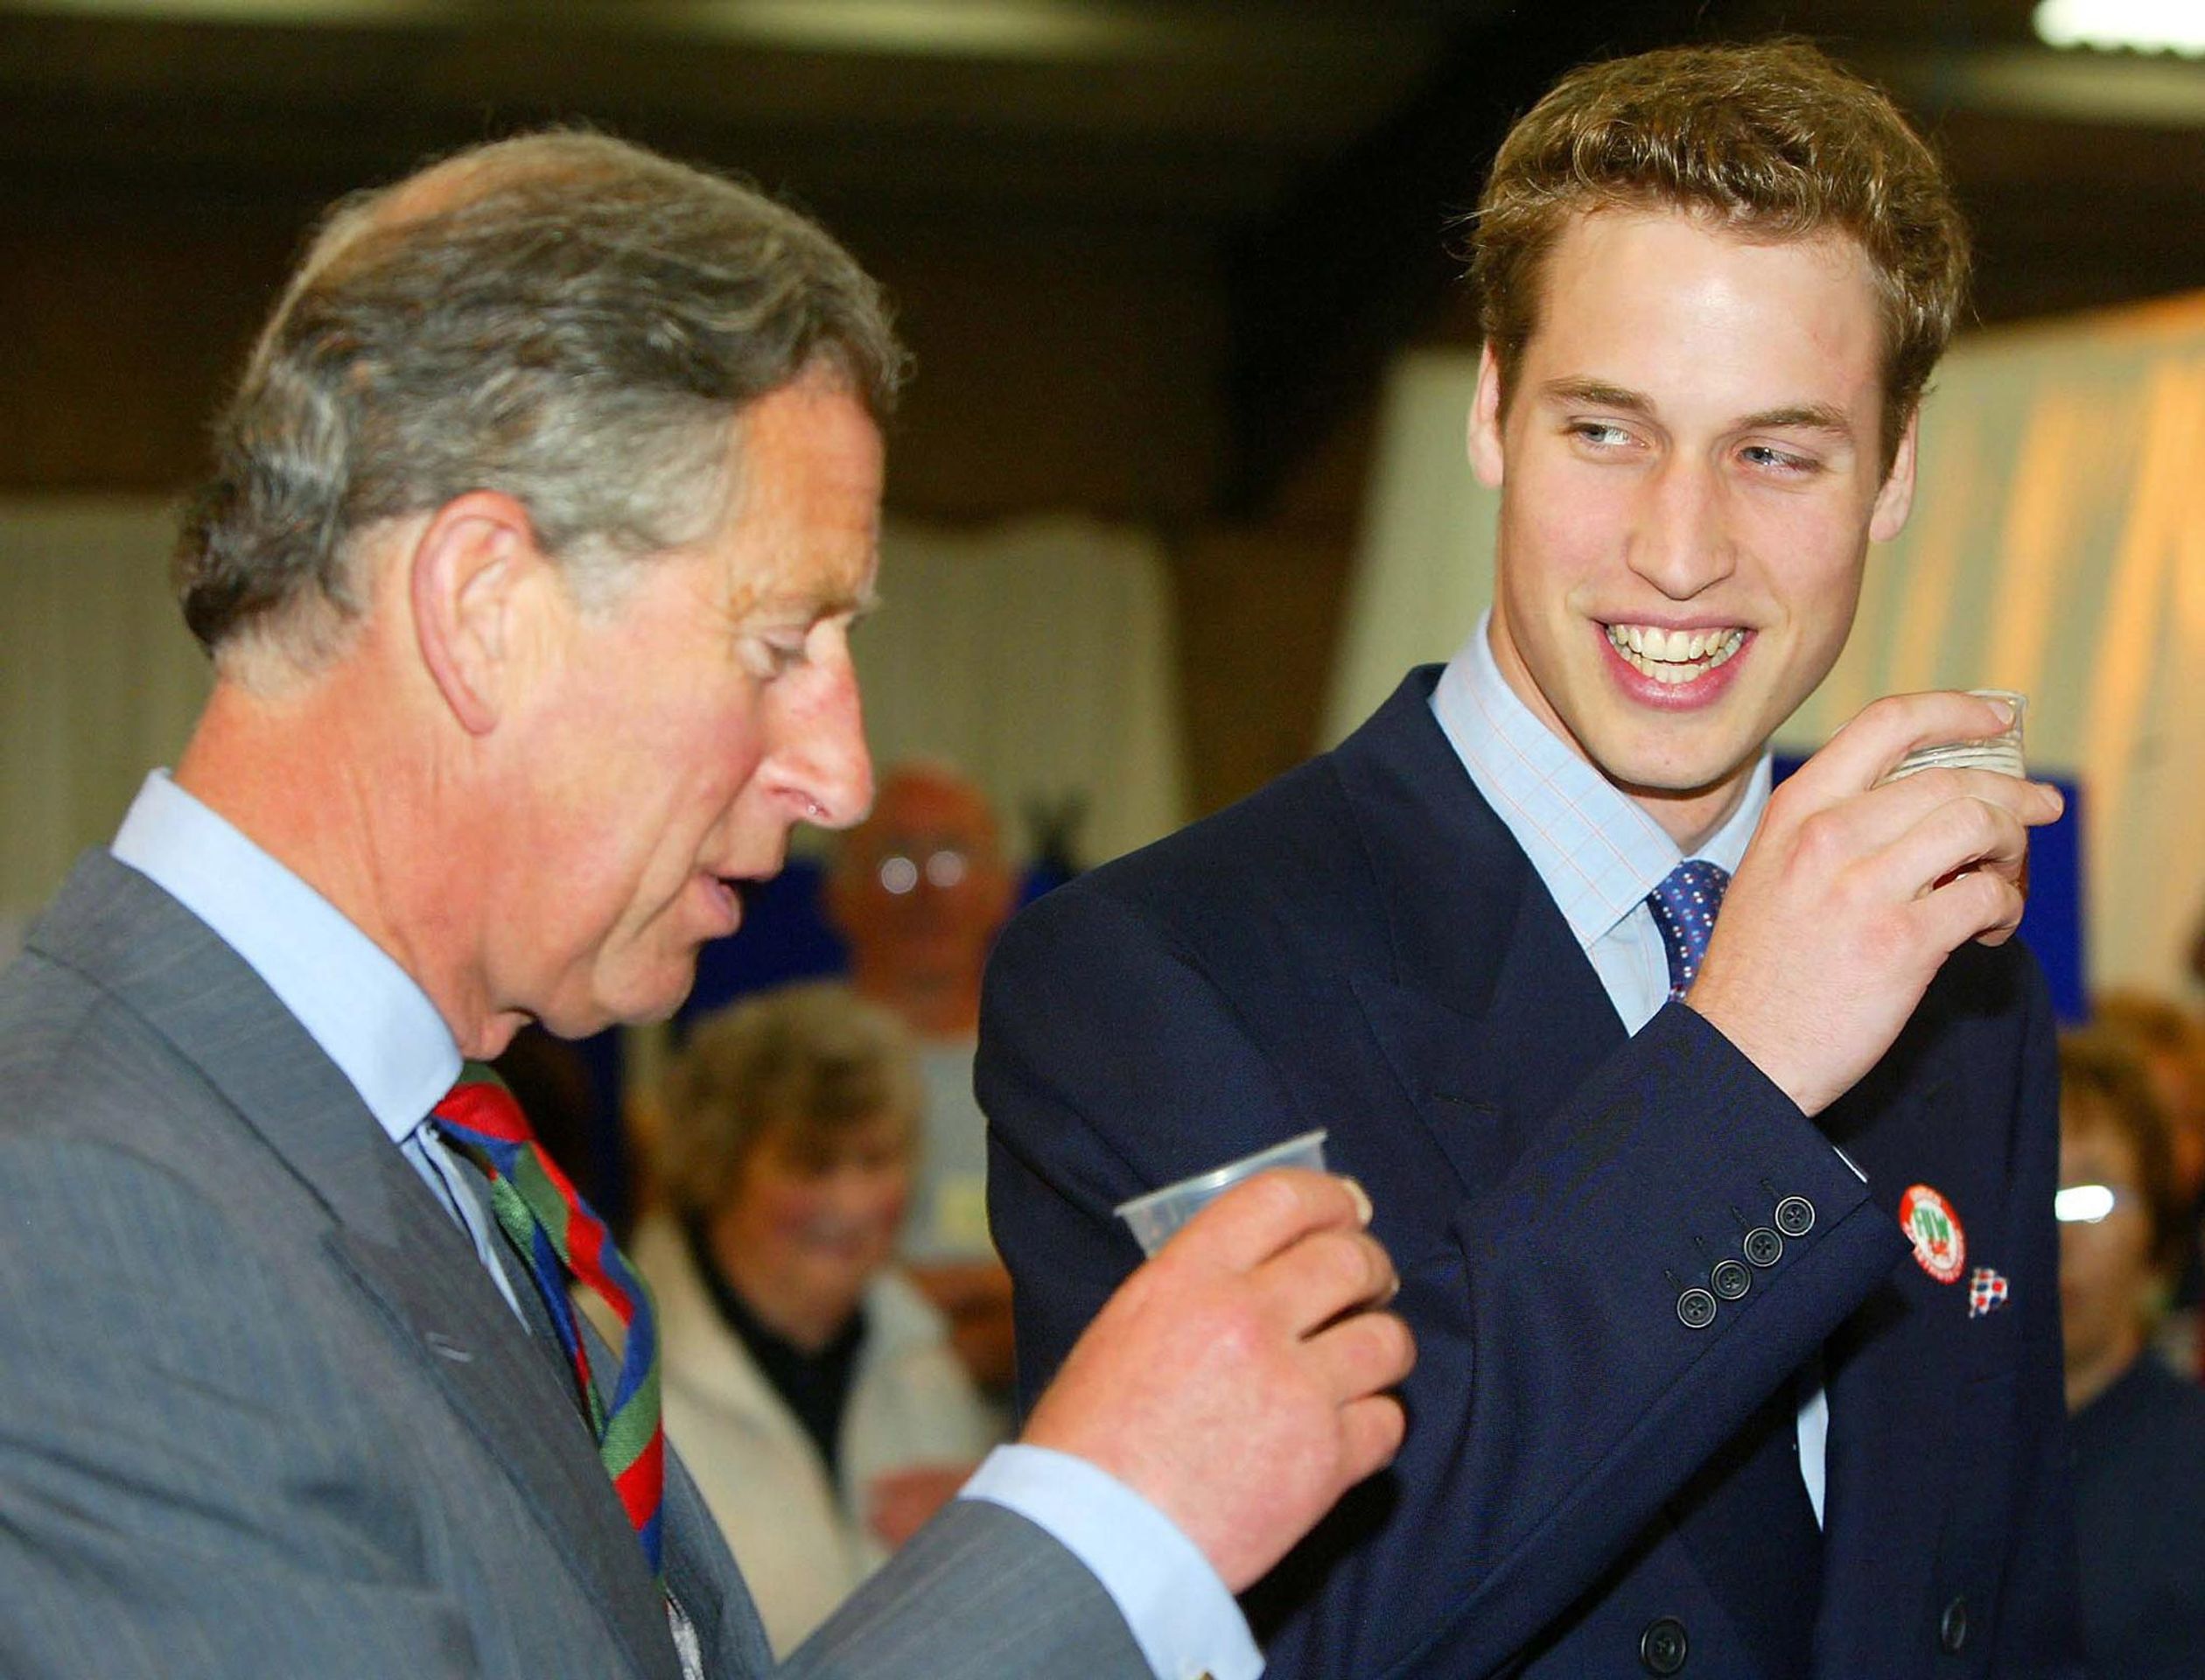 2003: in de aanloop naar zijn 21ste verjaardag, geniet prins William van een biertje met zijn vader, prins Charles, tijdens hun officiële bezoek aan Wales.